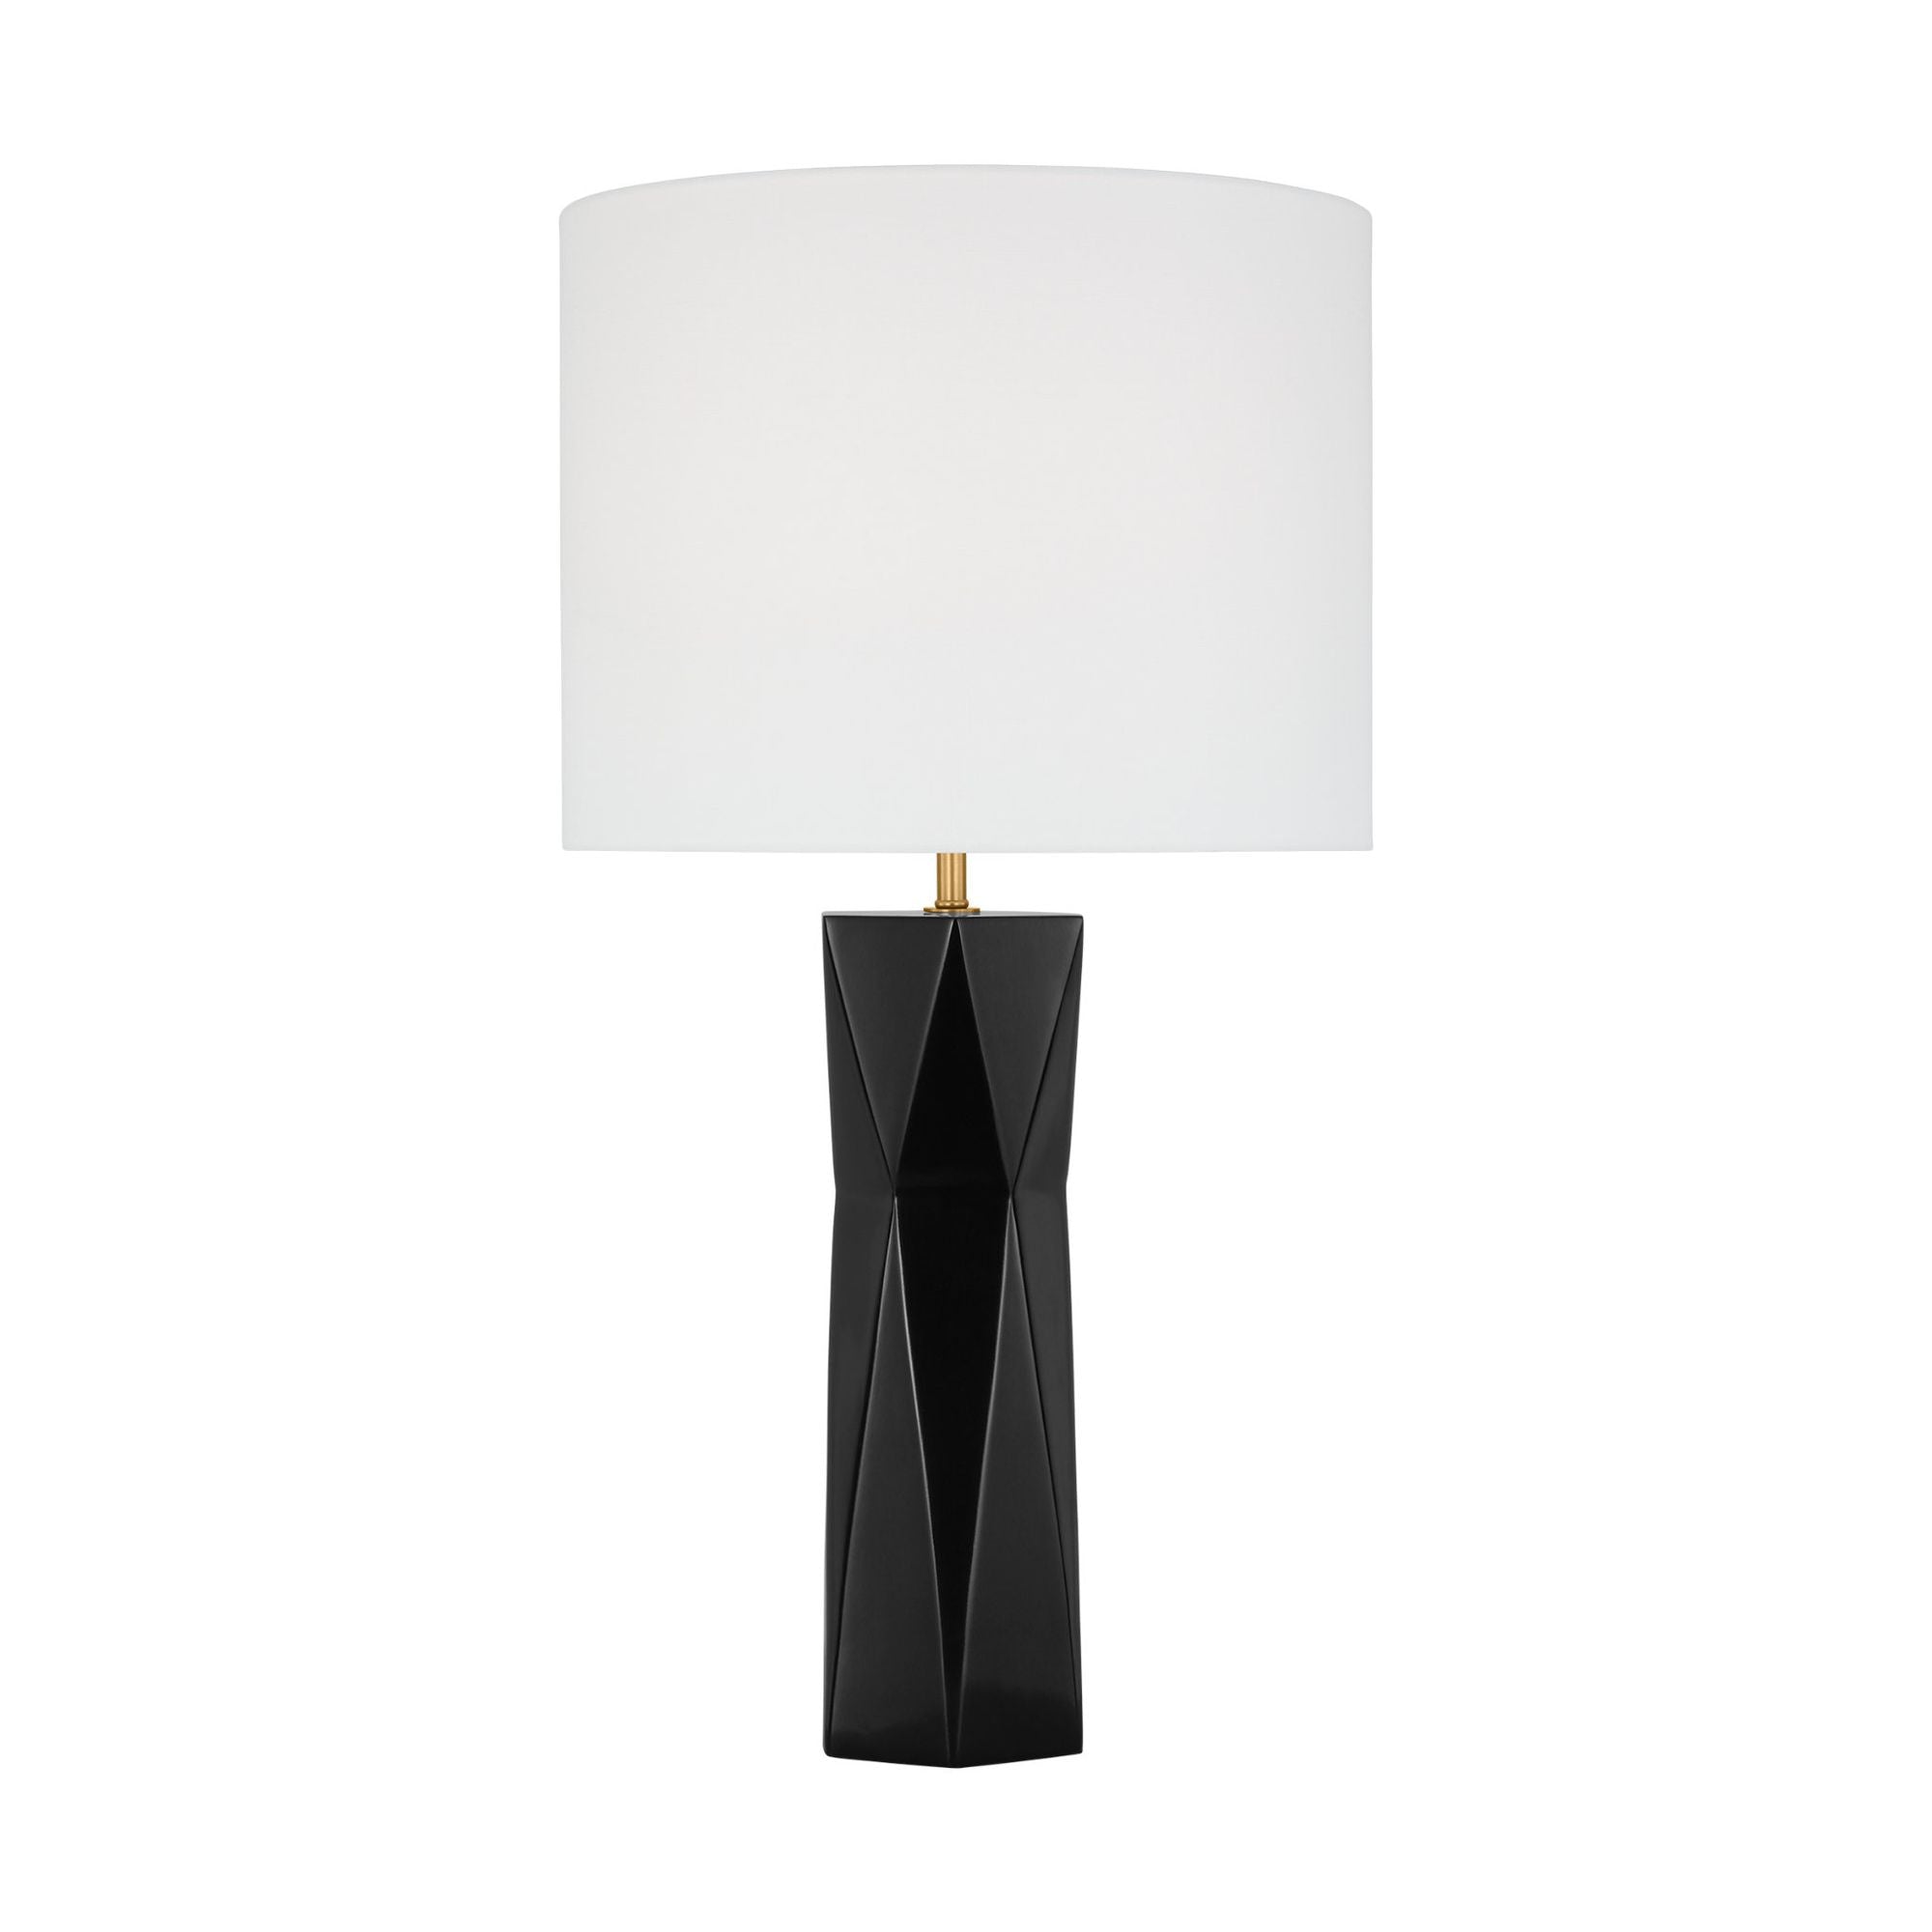 Drew & Jonathan Fernwood Medium Table Lamp in Gloss Black